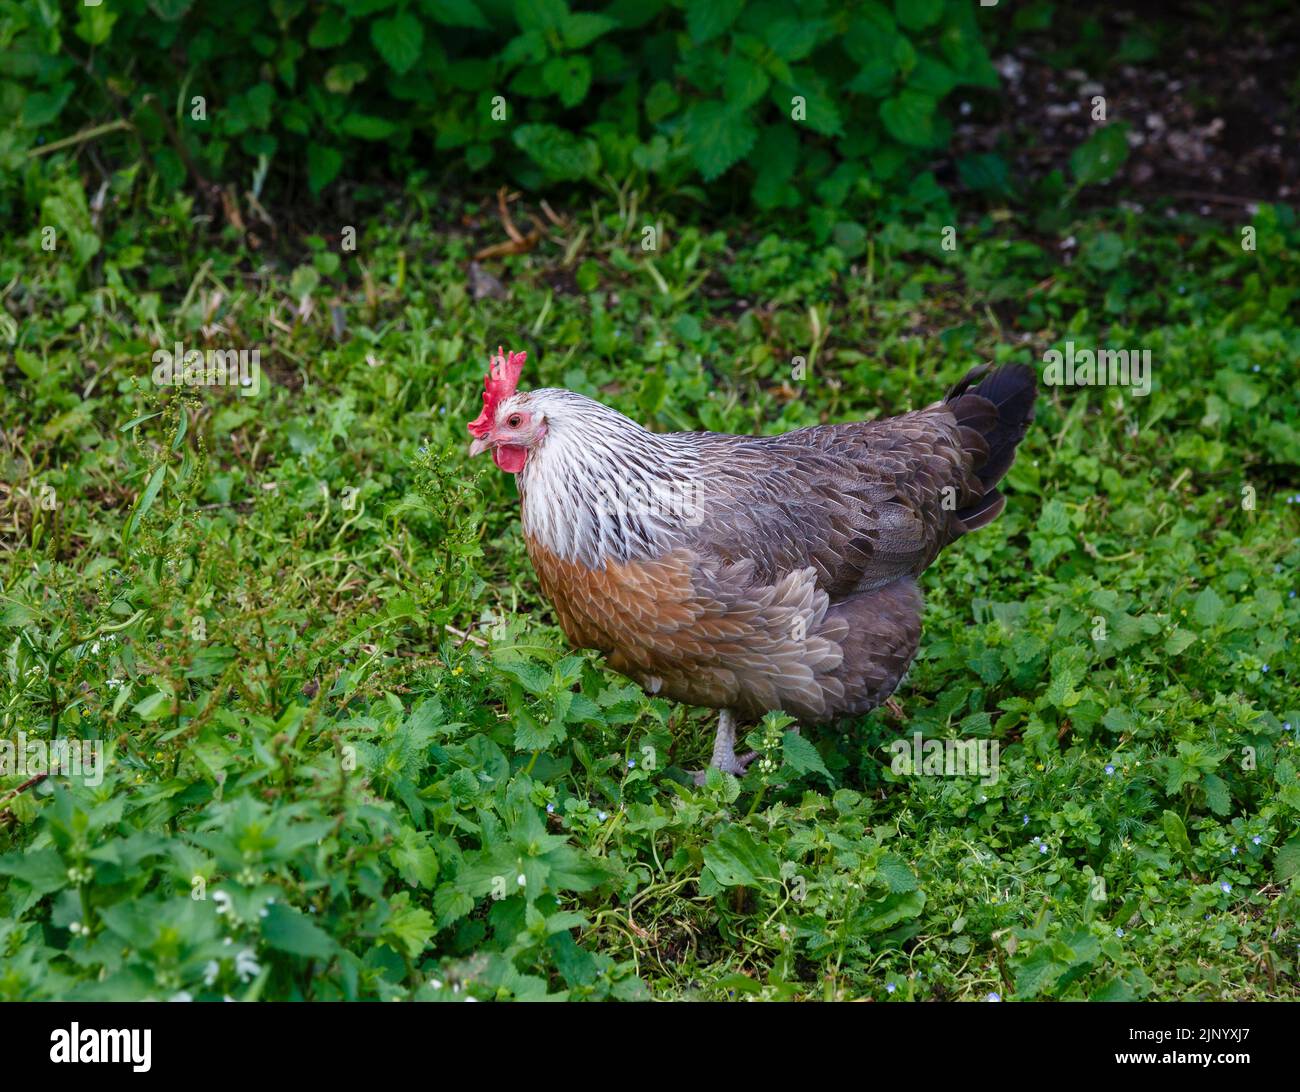 Un gallo de pollo de 5 toed Silver Grey Dorking, una raza rara mantenida en peligro de extinción que lleva el nombre de la ciudad de Dorking en Surrey, Inglaterra Foto de stock